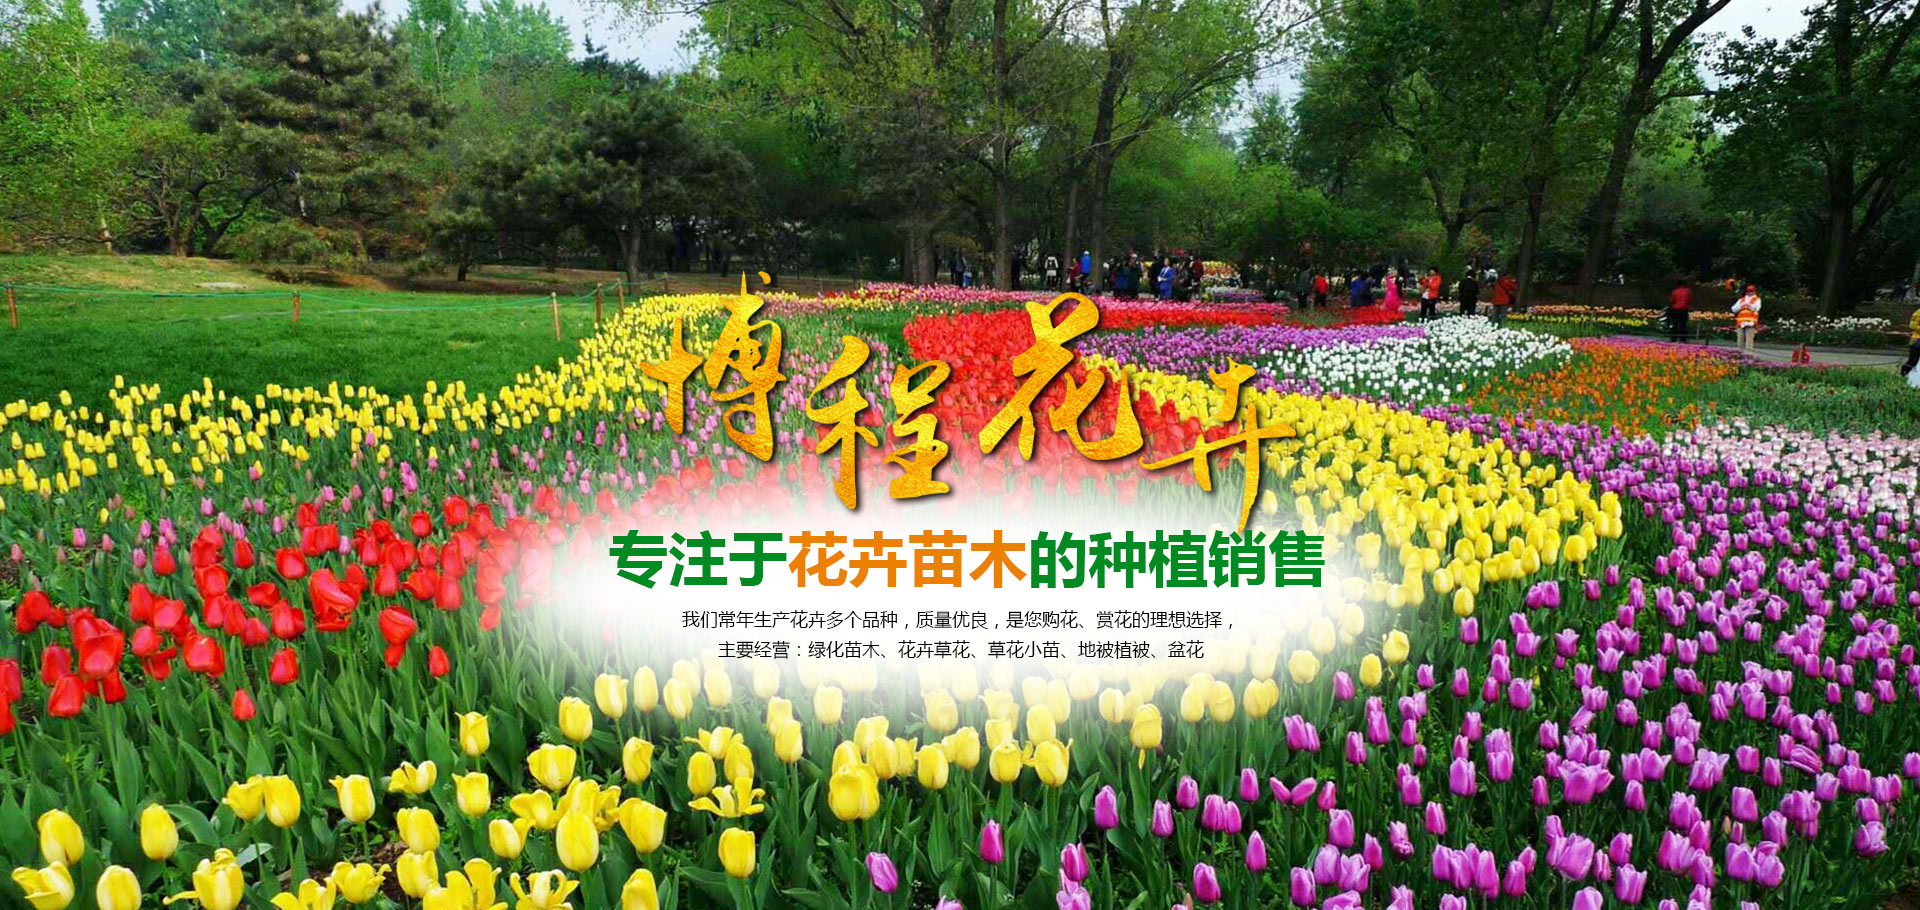 青州市博程花卉苗木有限公司